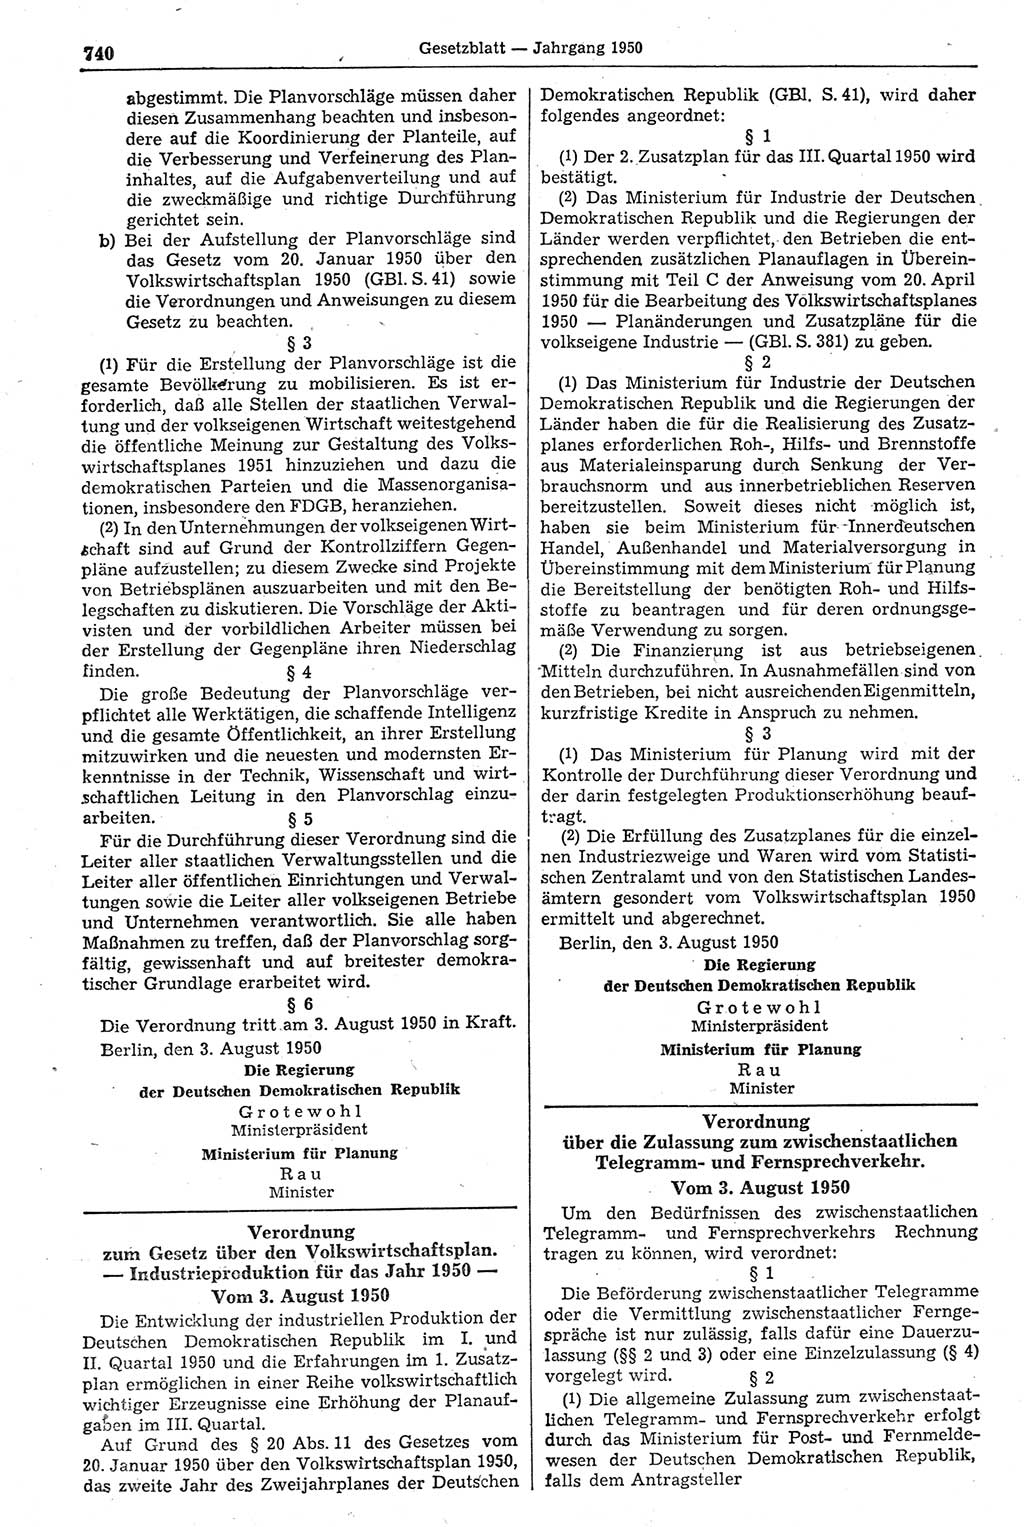 Gesetzblatt (GBl.) der Deutschen Demokratischen Republik (DDR) 1950, Seite 740 (GBl. DDR 1950, S. 740)